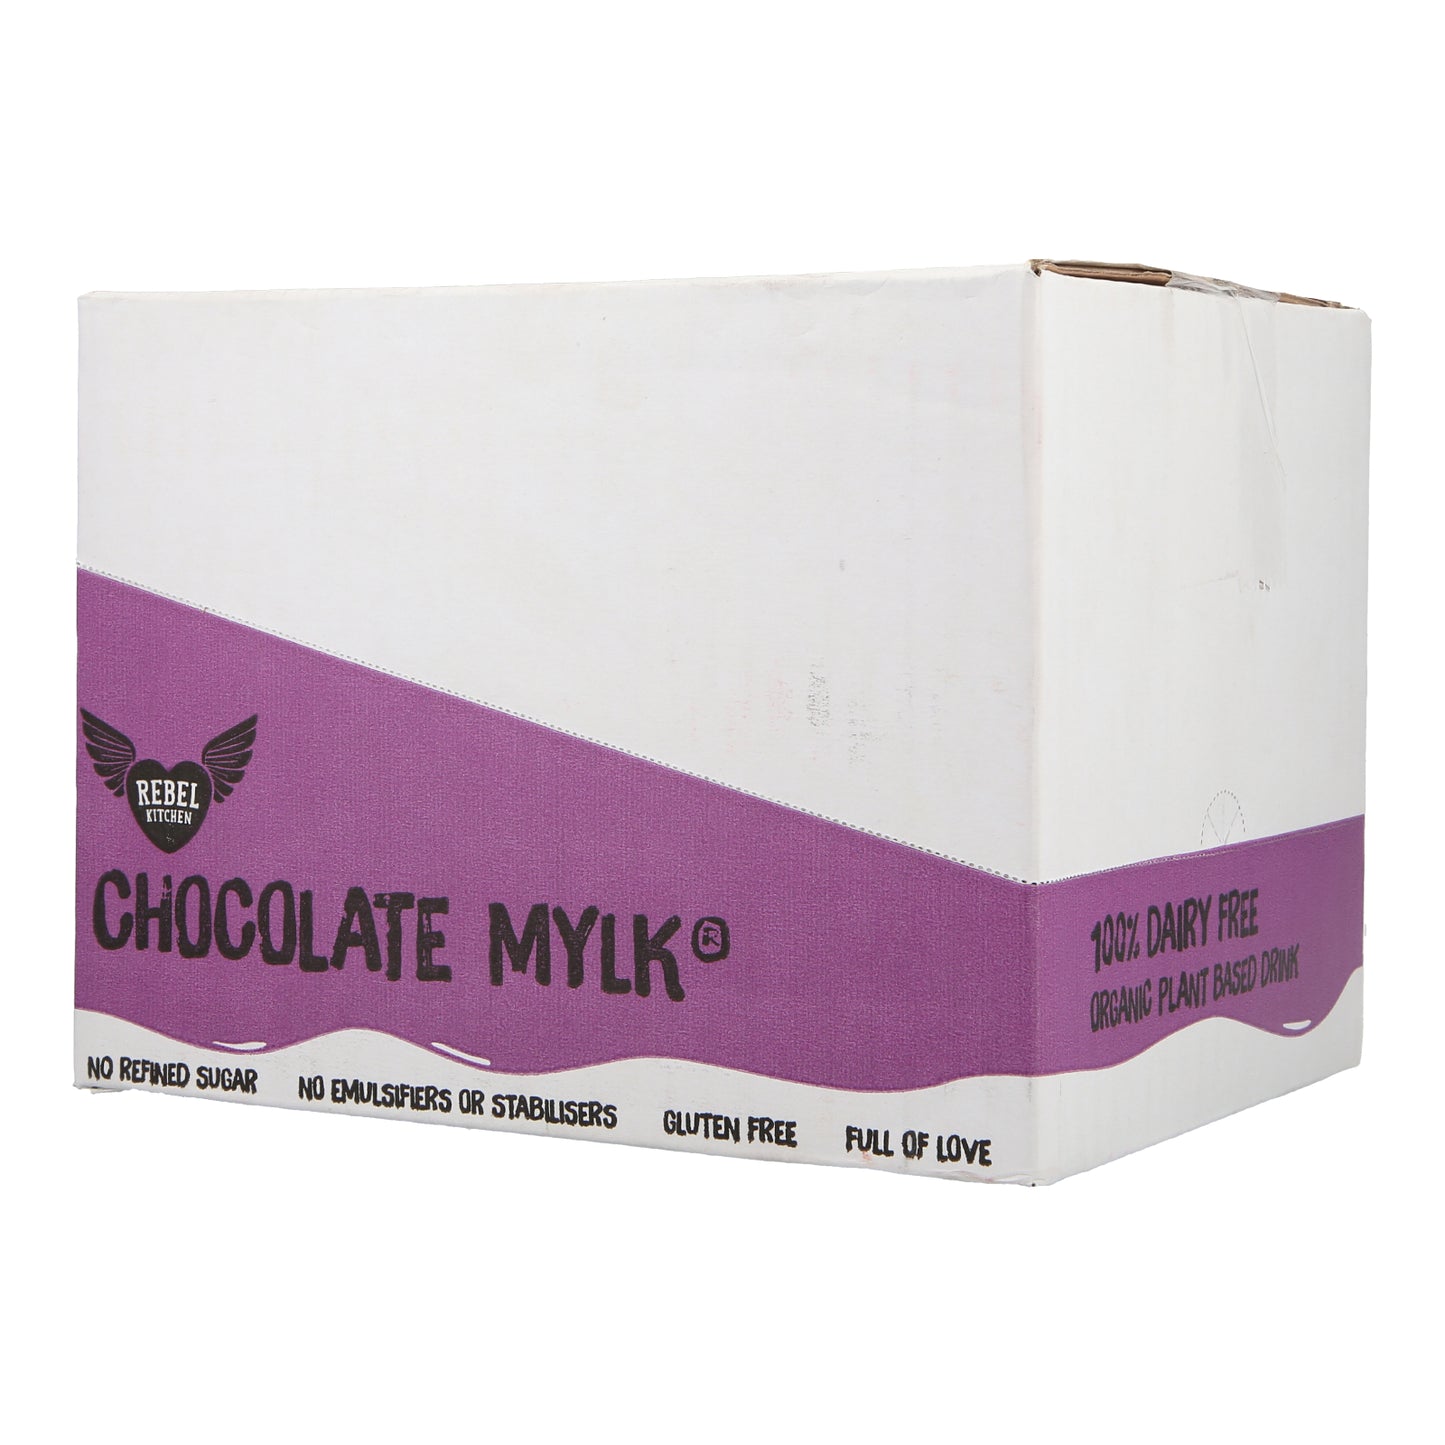 Chocolate Mylk